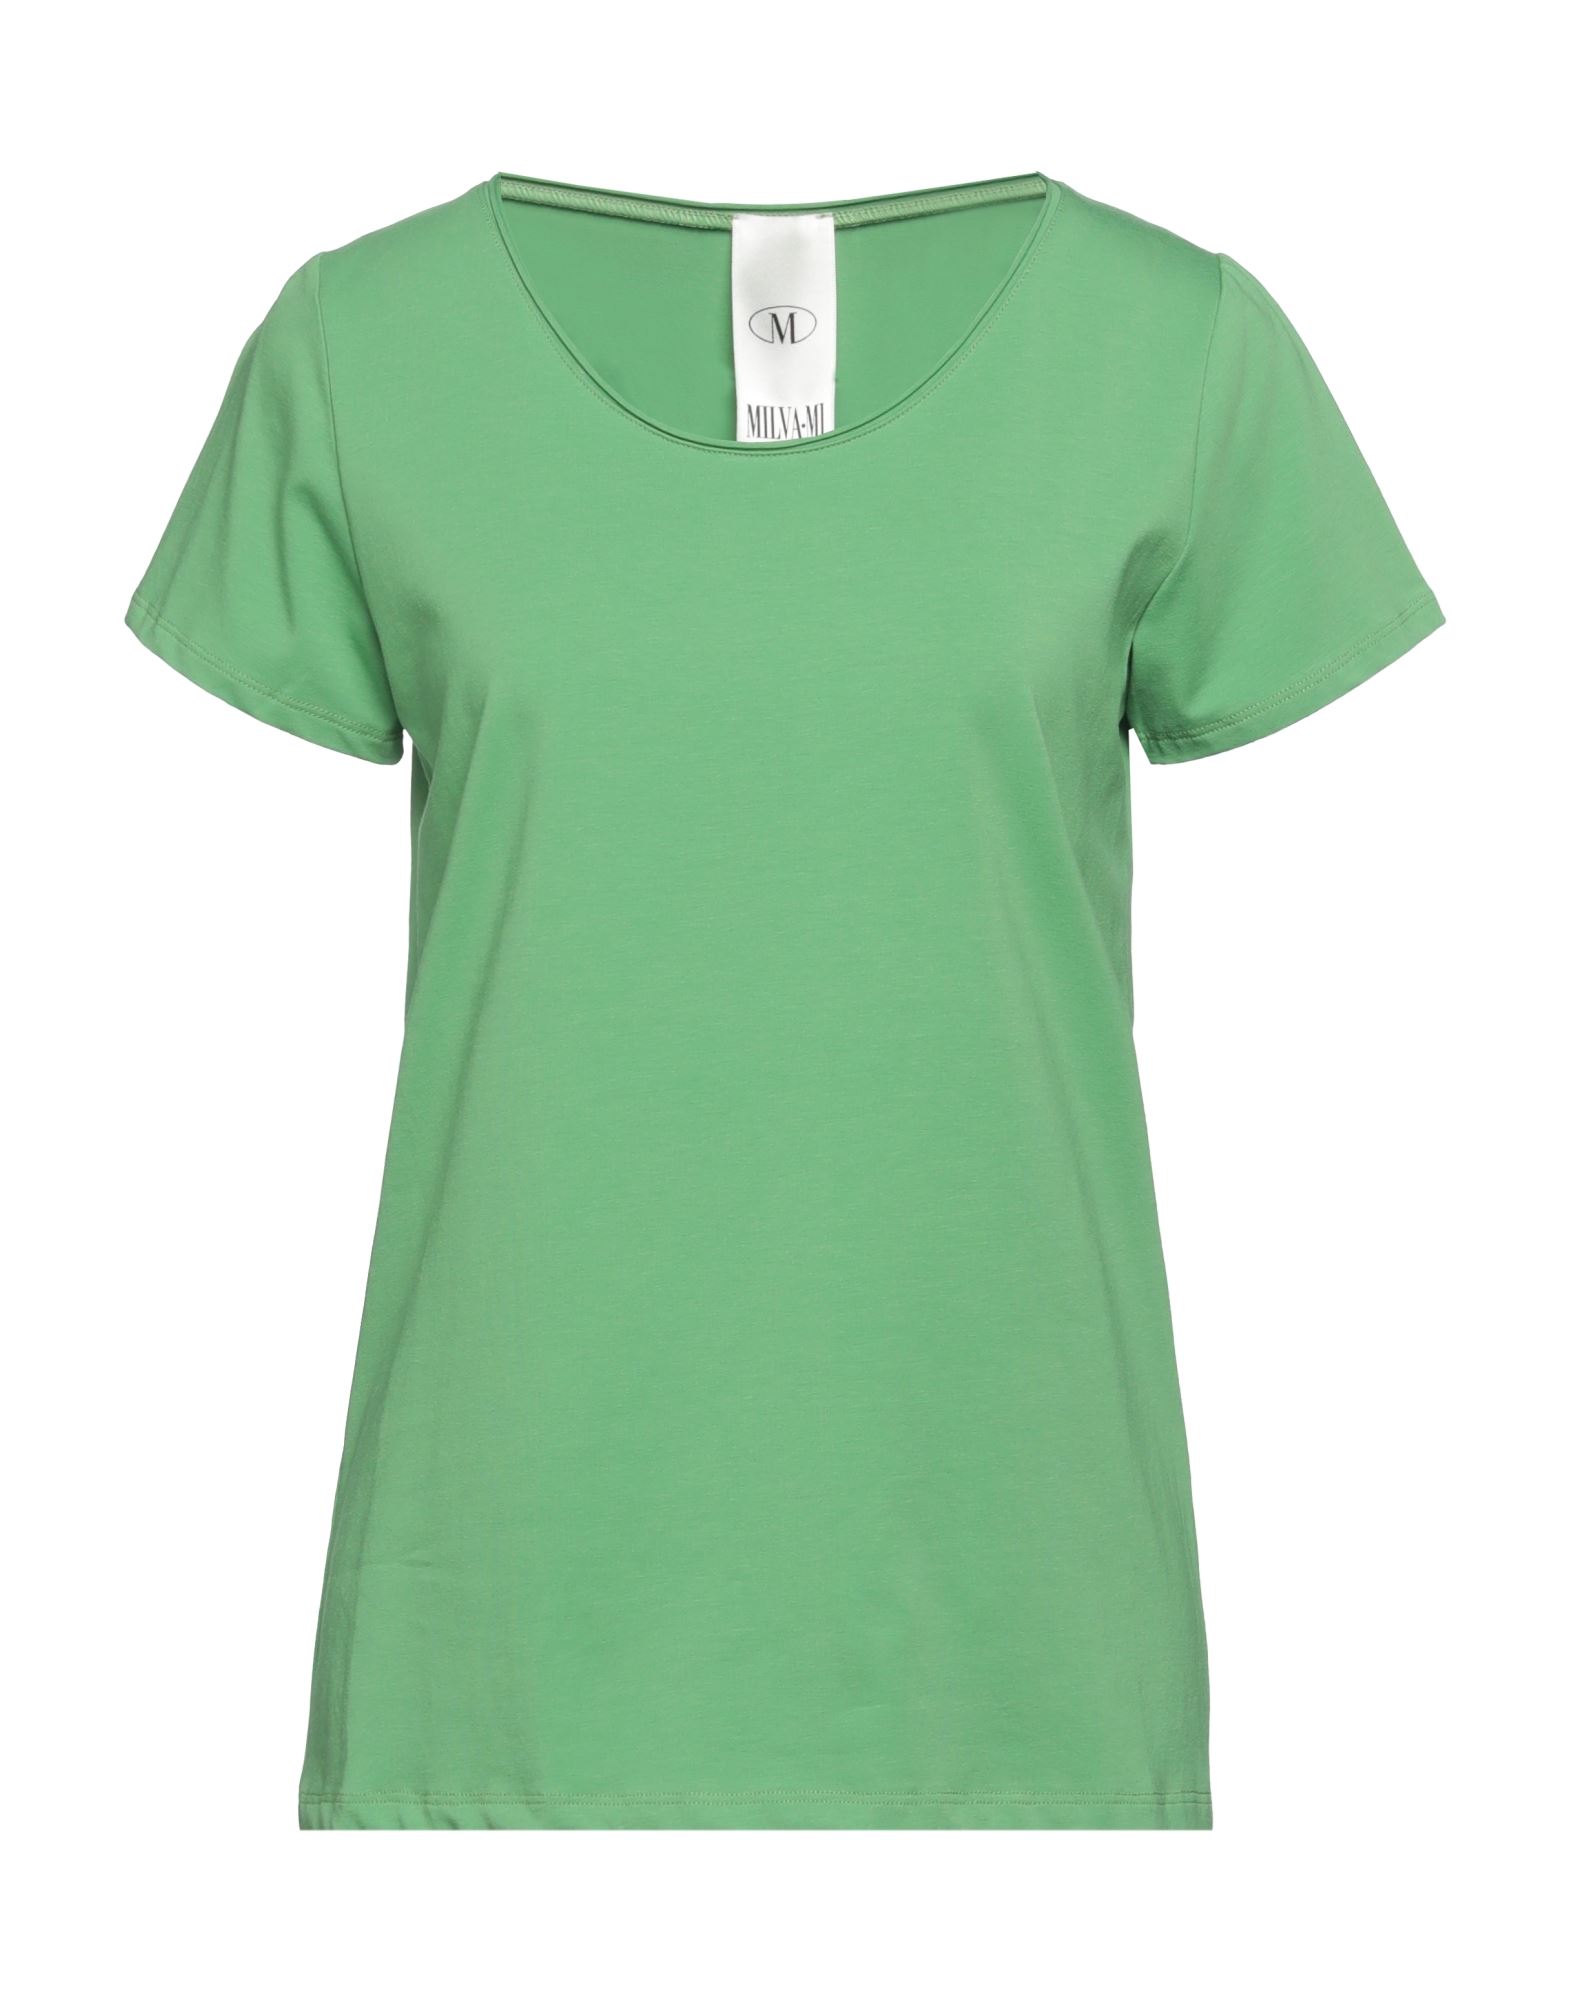 Milva Mi T-shirts In Green